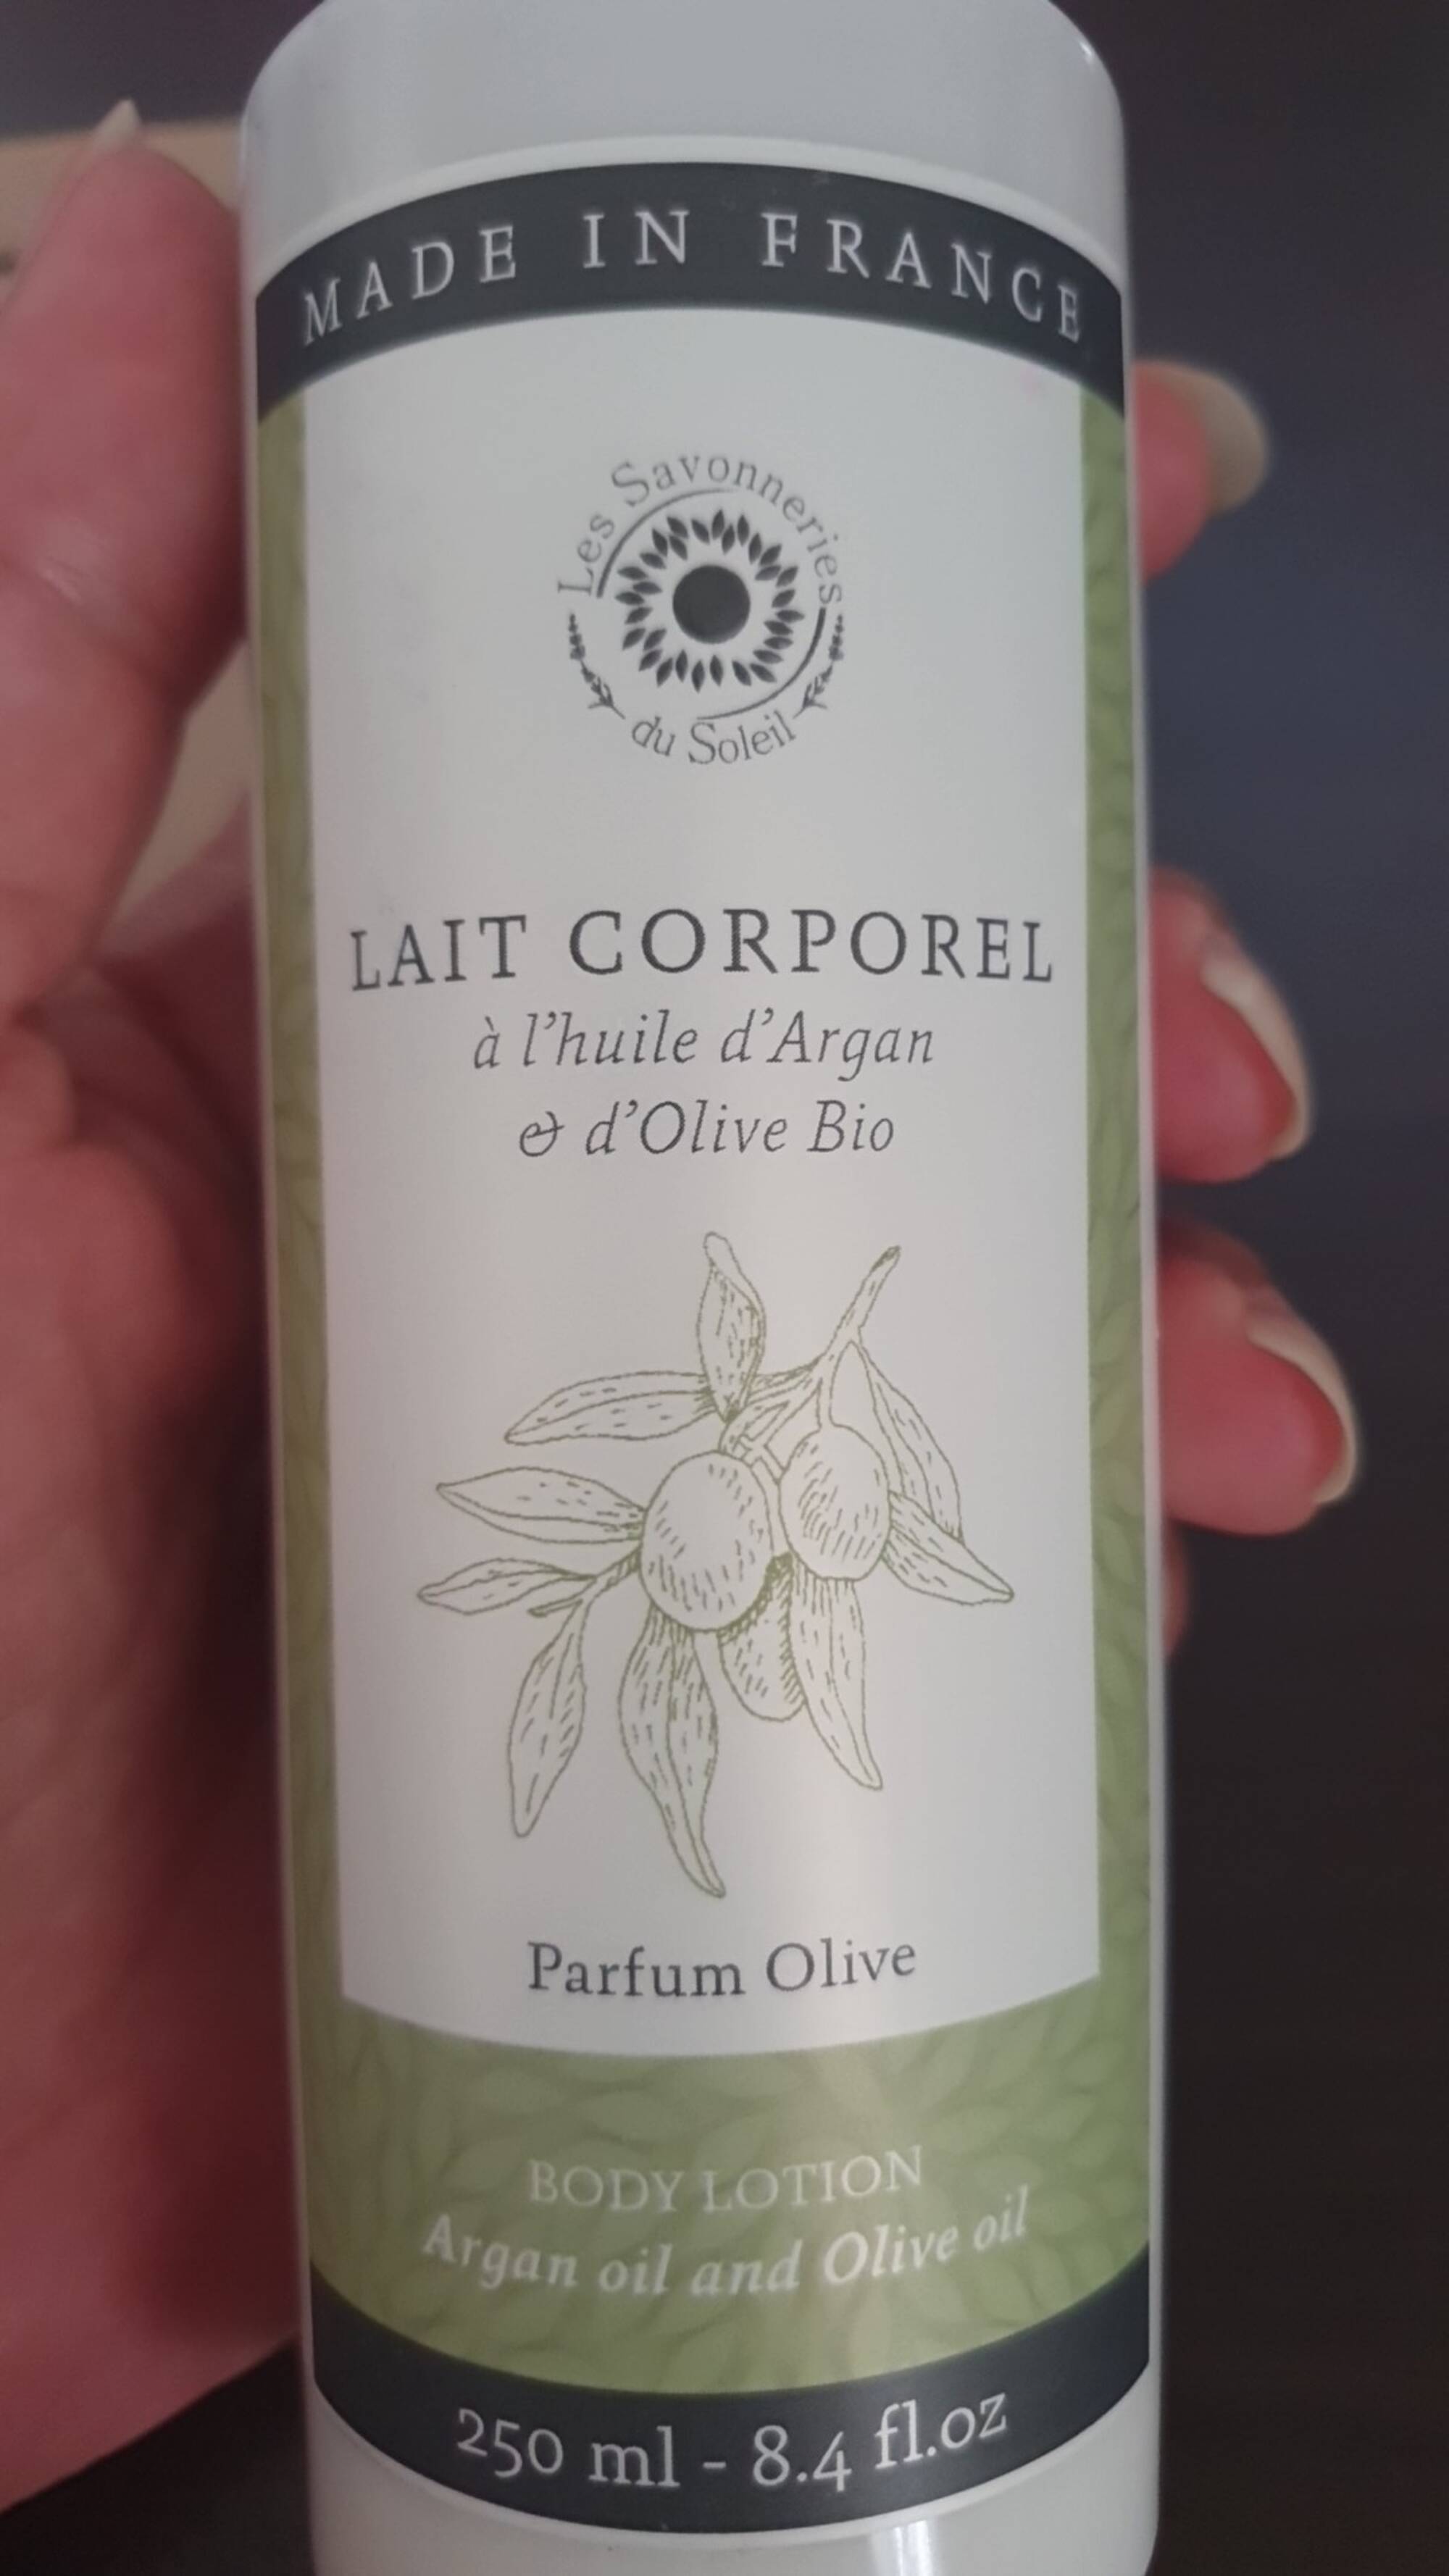 LES SAVONNERIES DU SOLEIL - Lait corporel parfum olive